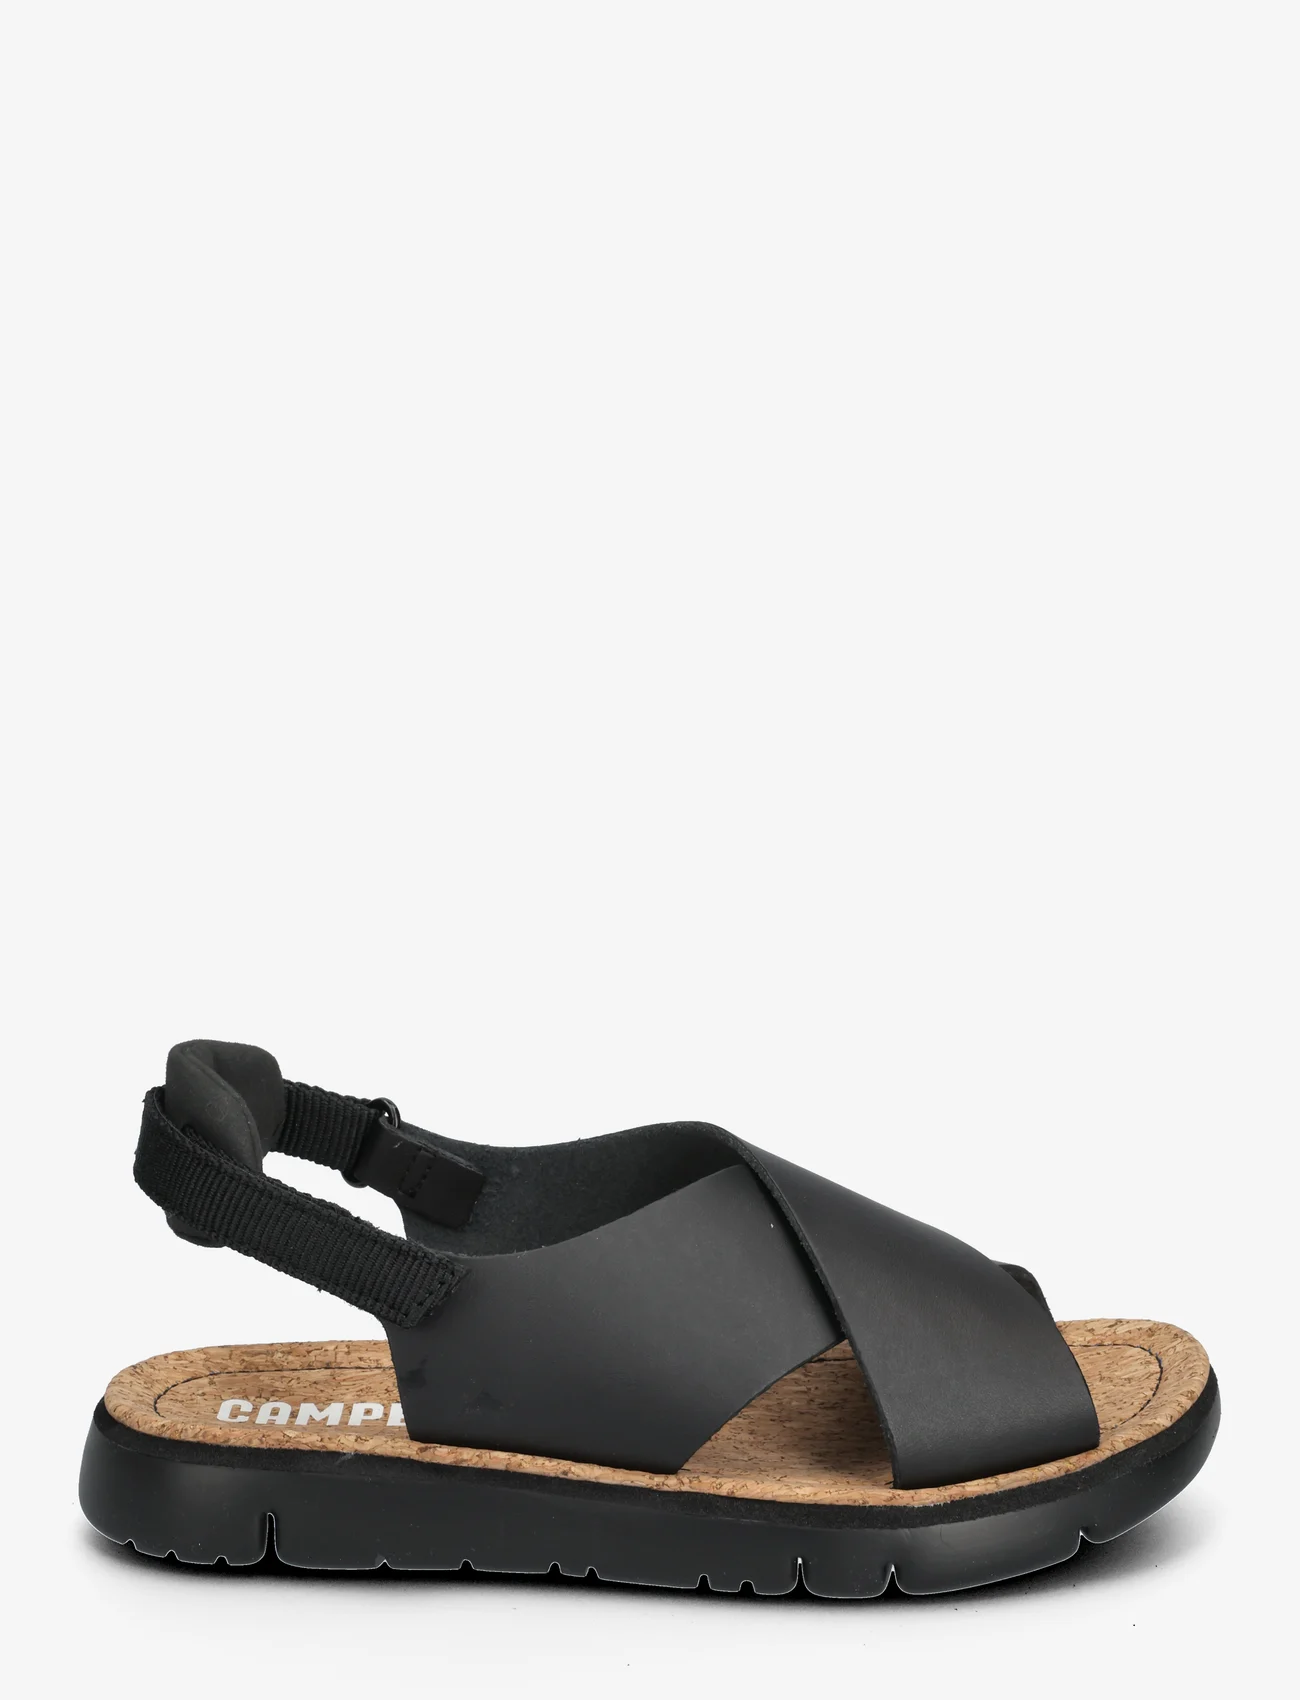 Camper - Oruga Sandal - platte sandalen - black - 1